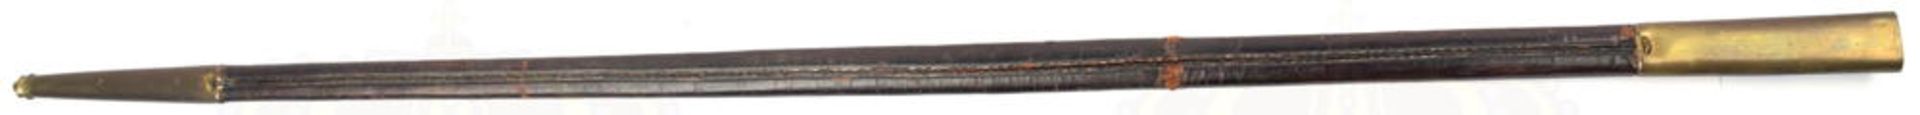 DEGEN, blanke zweischneidige Klinge m. 24cm langer Fehlschärfe, eingeschlagene Bez. „Toledo“, L. 75c - Bild 3 aus 11